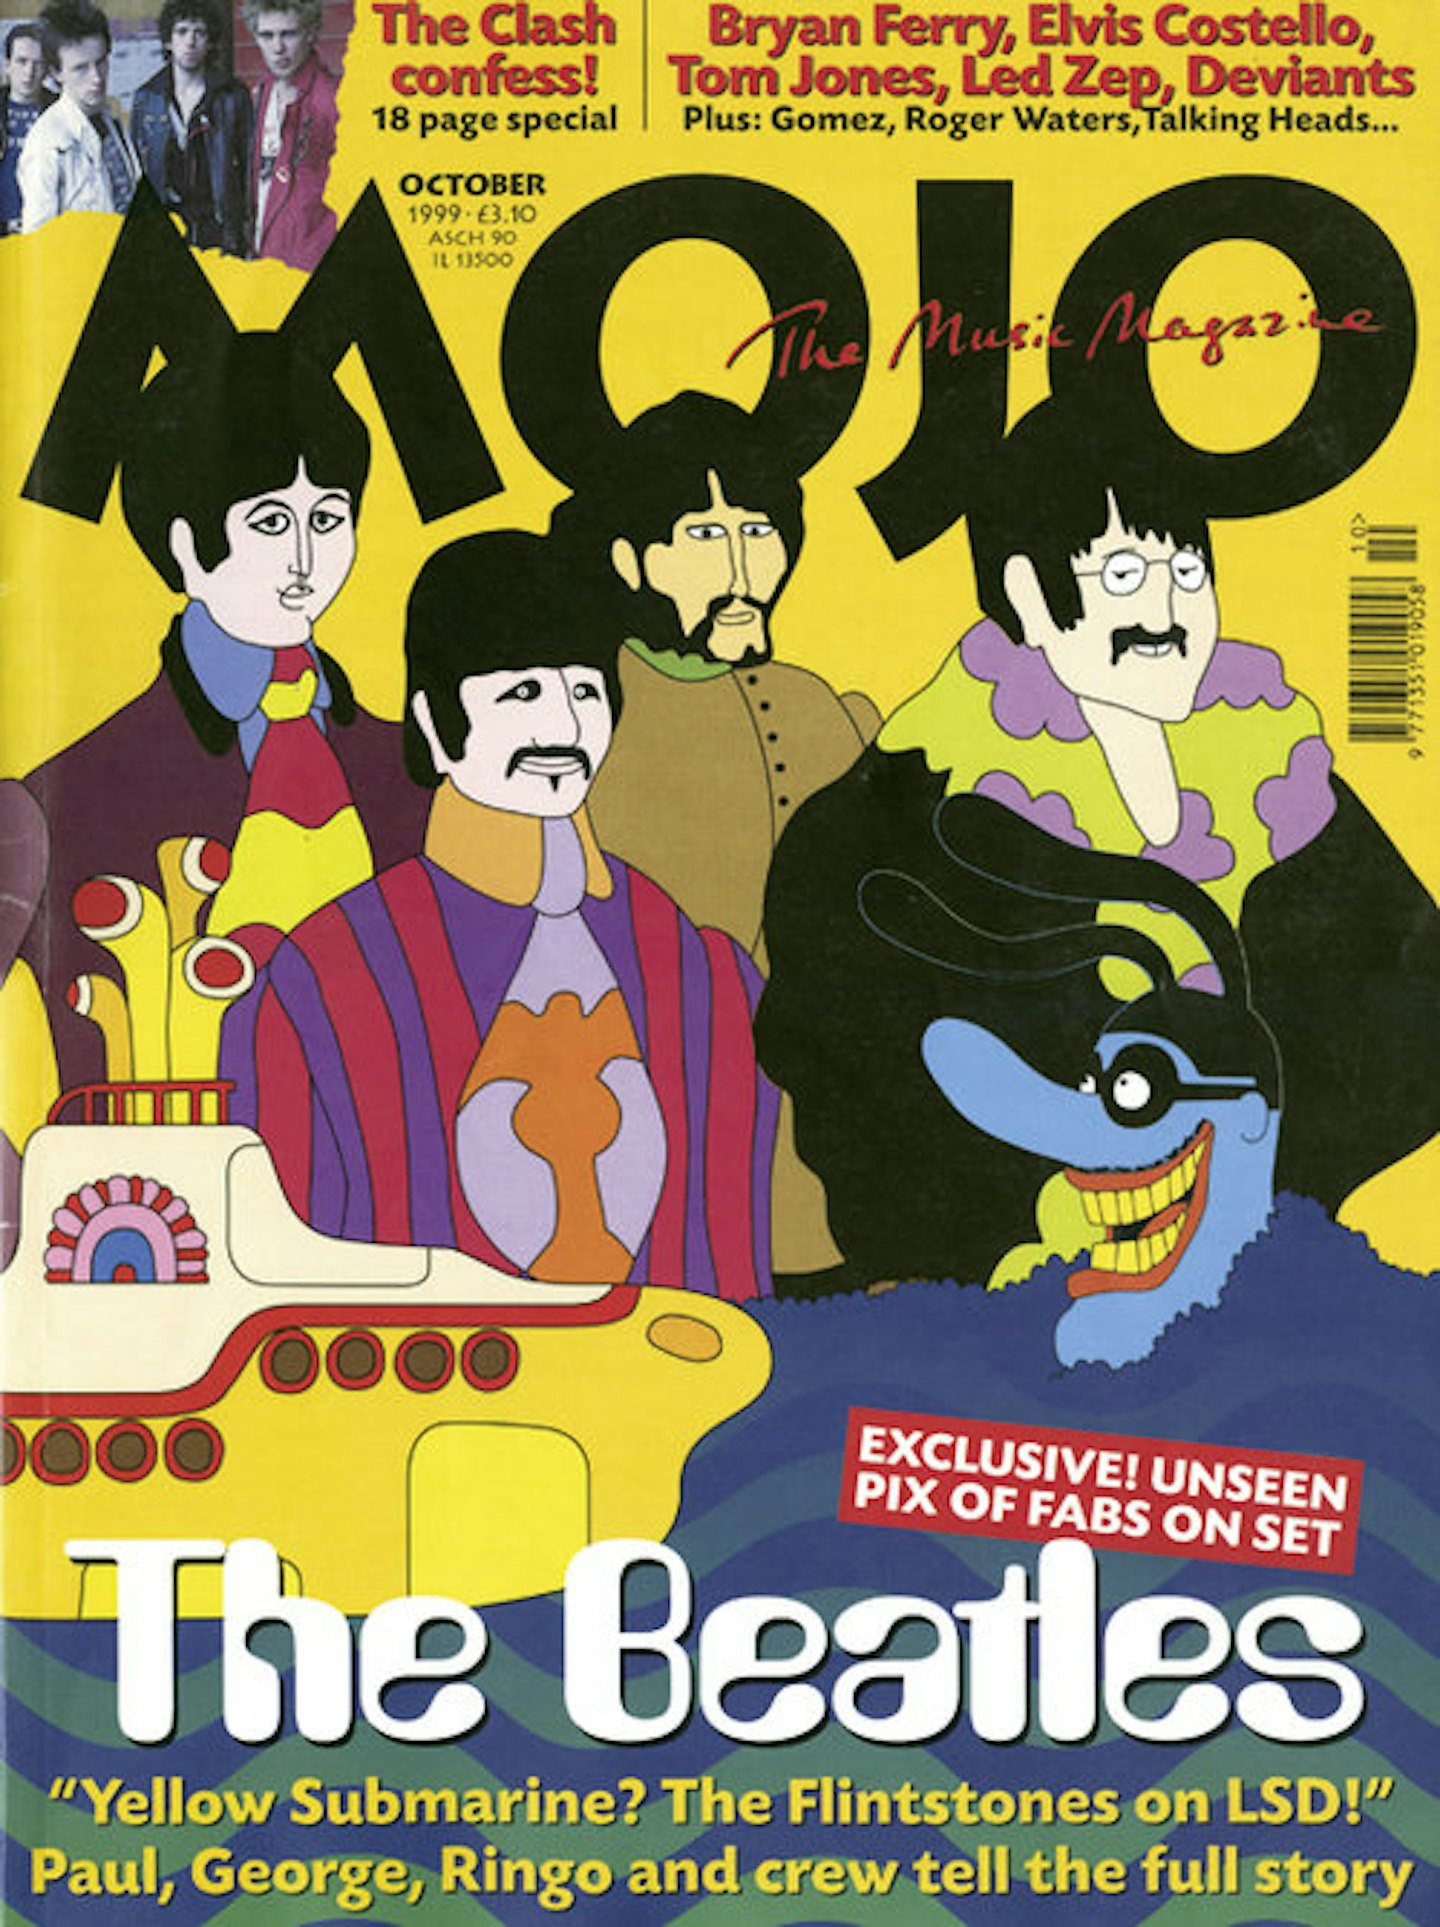 MOJO Issue 71 / October 1999